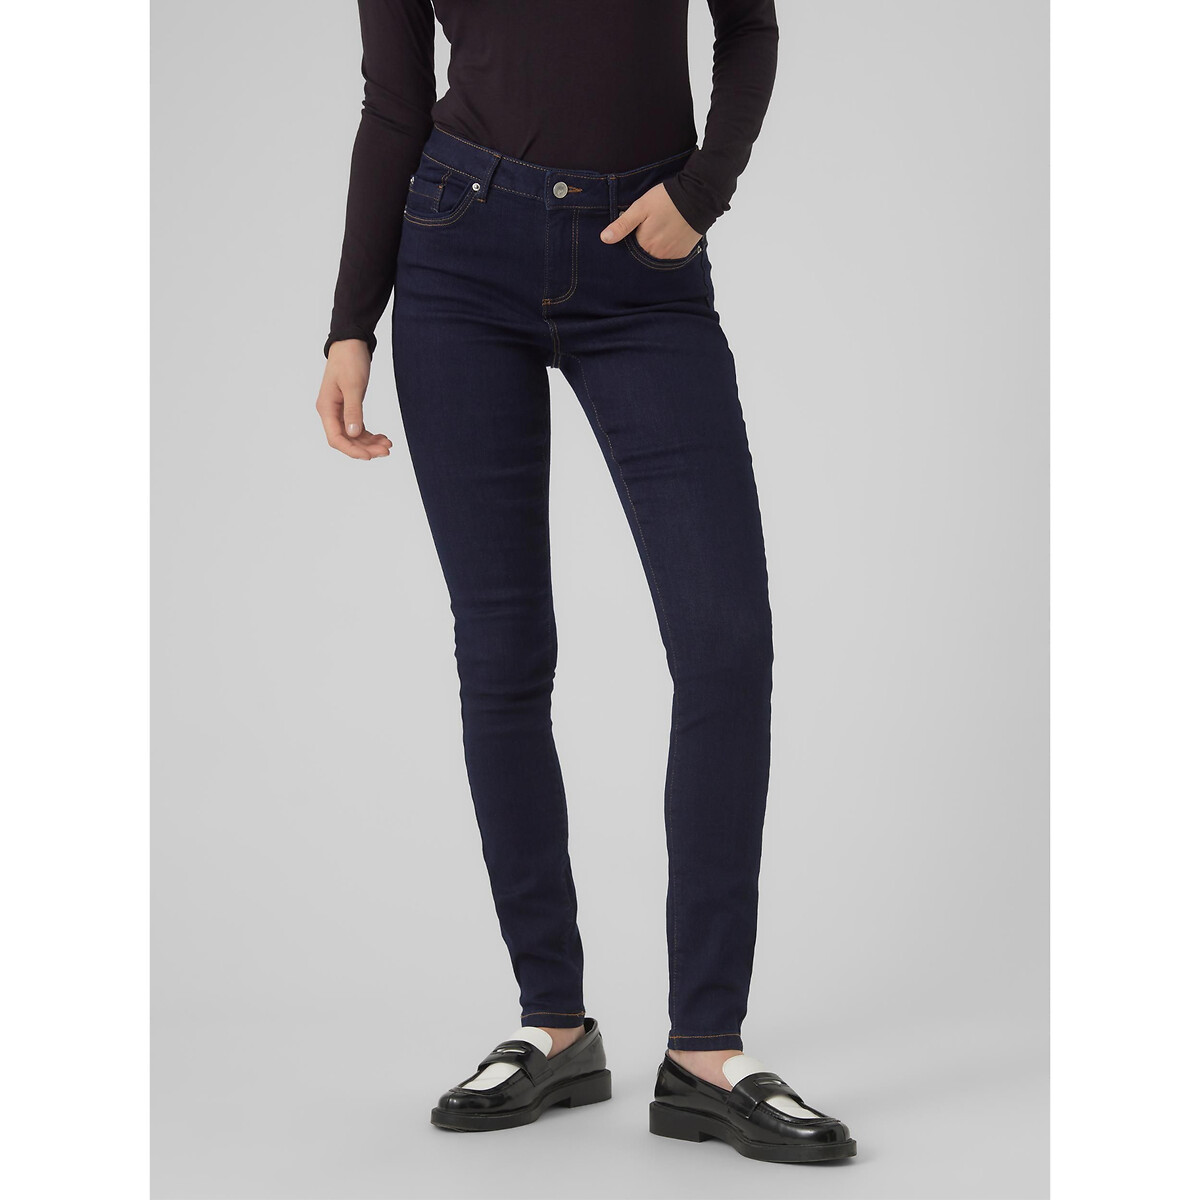 Skinny jeans, standaard taille in de sale-VERO MODA 1